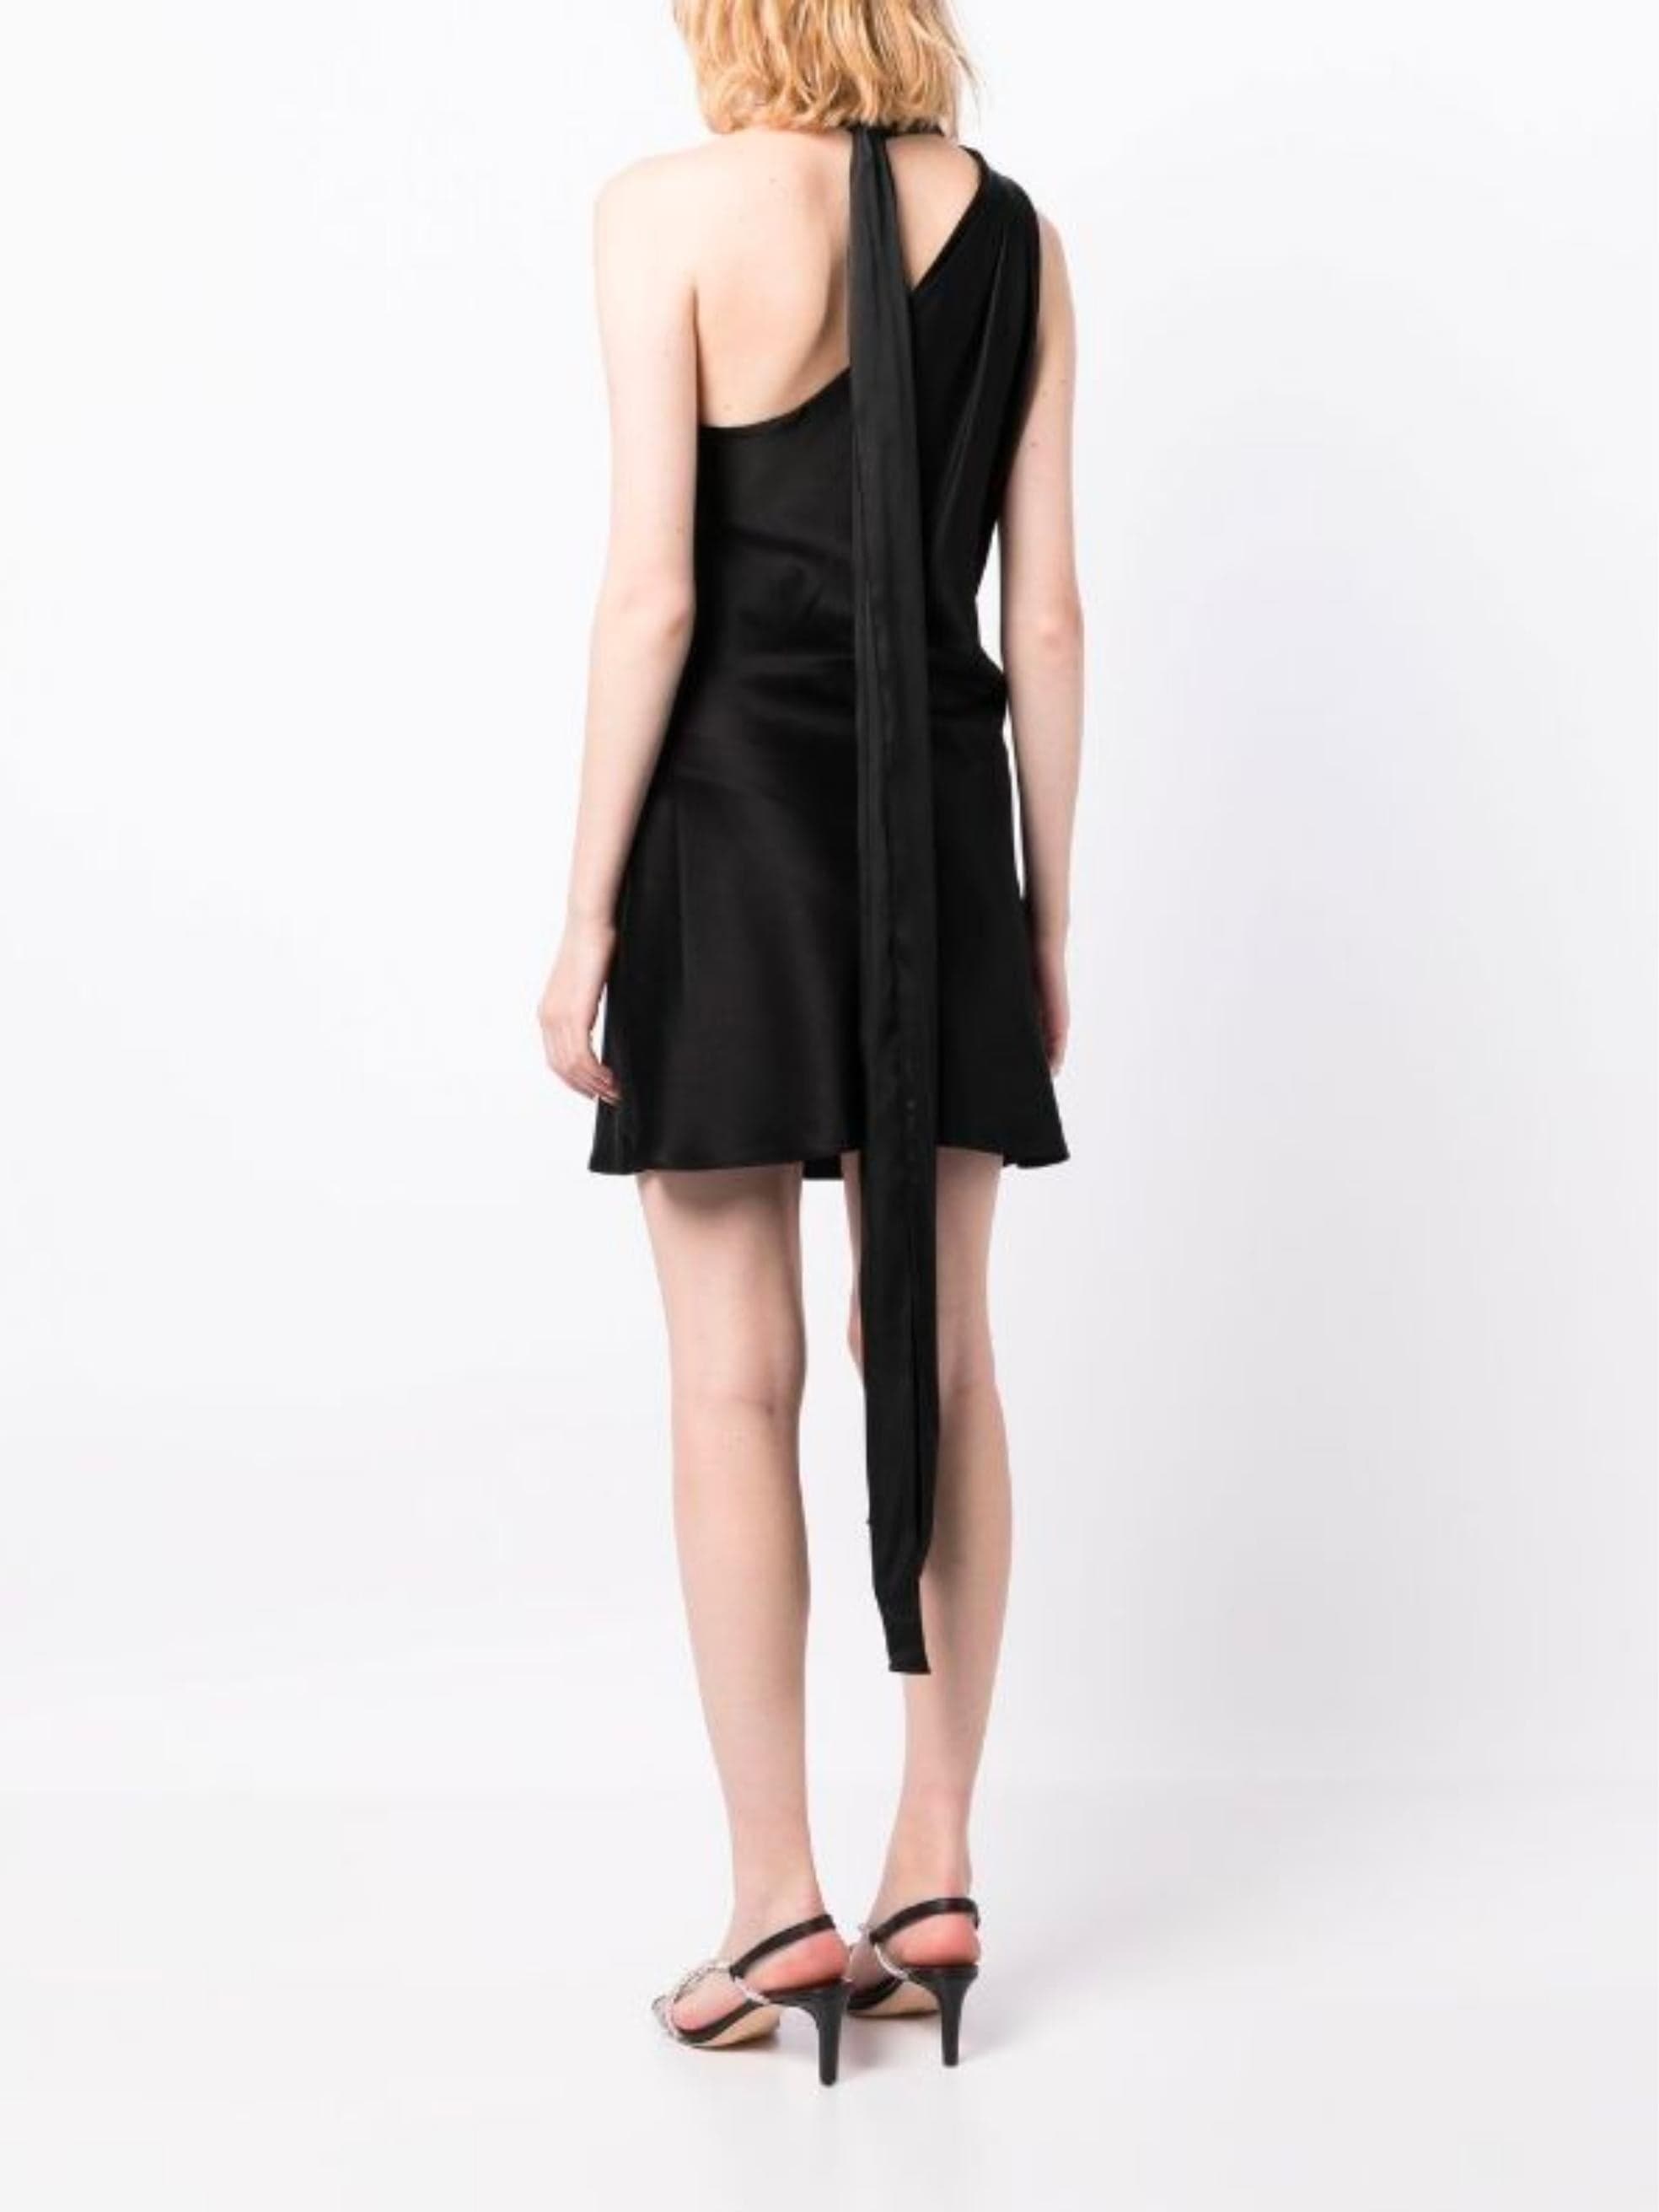 Leola Mini Dress in Black